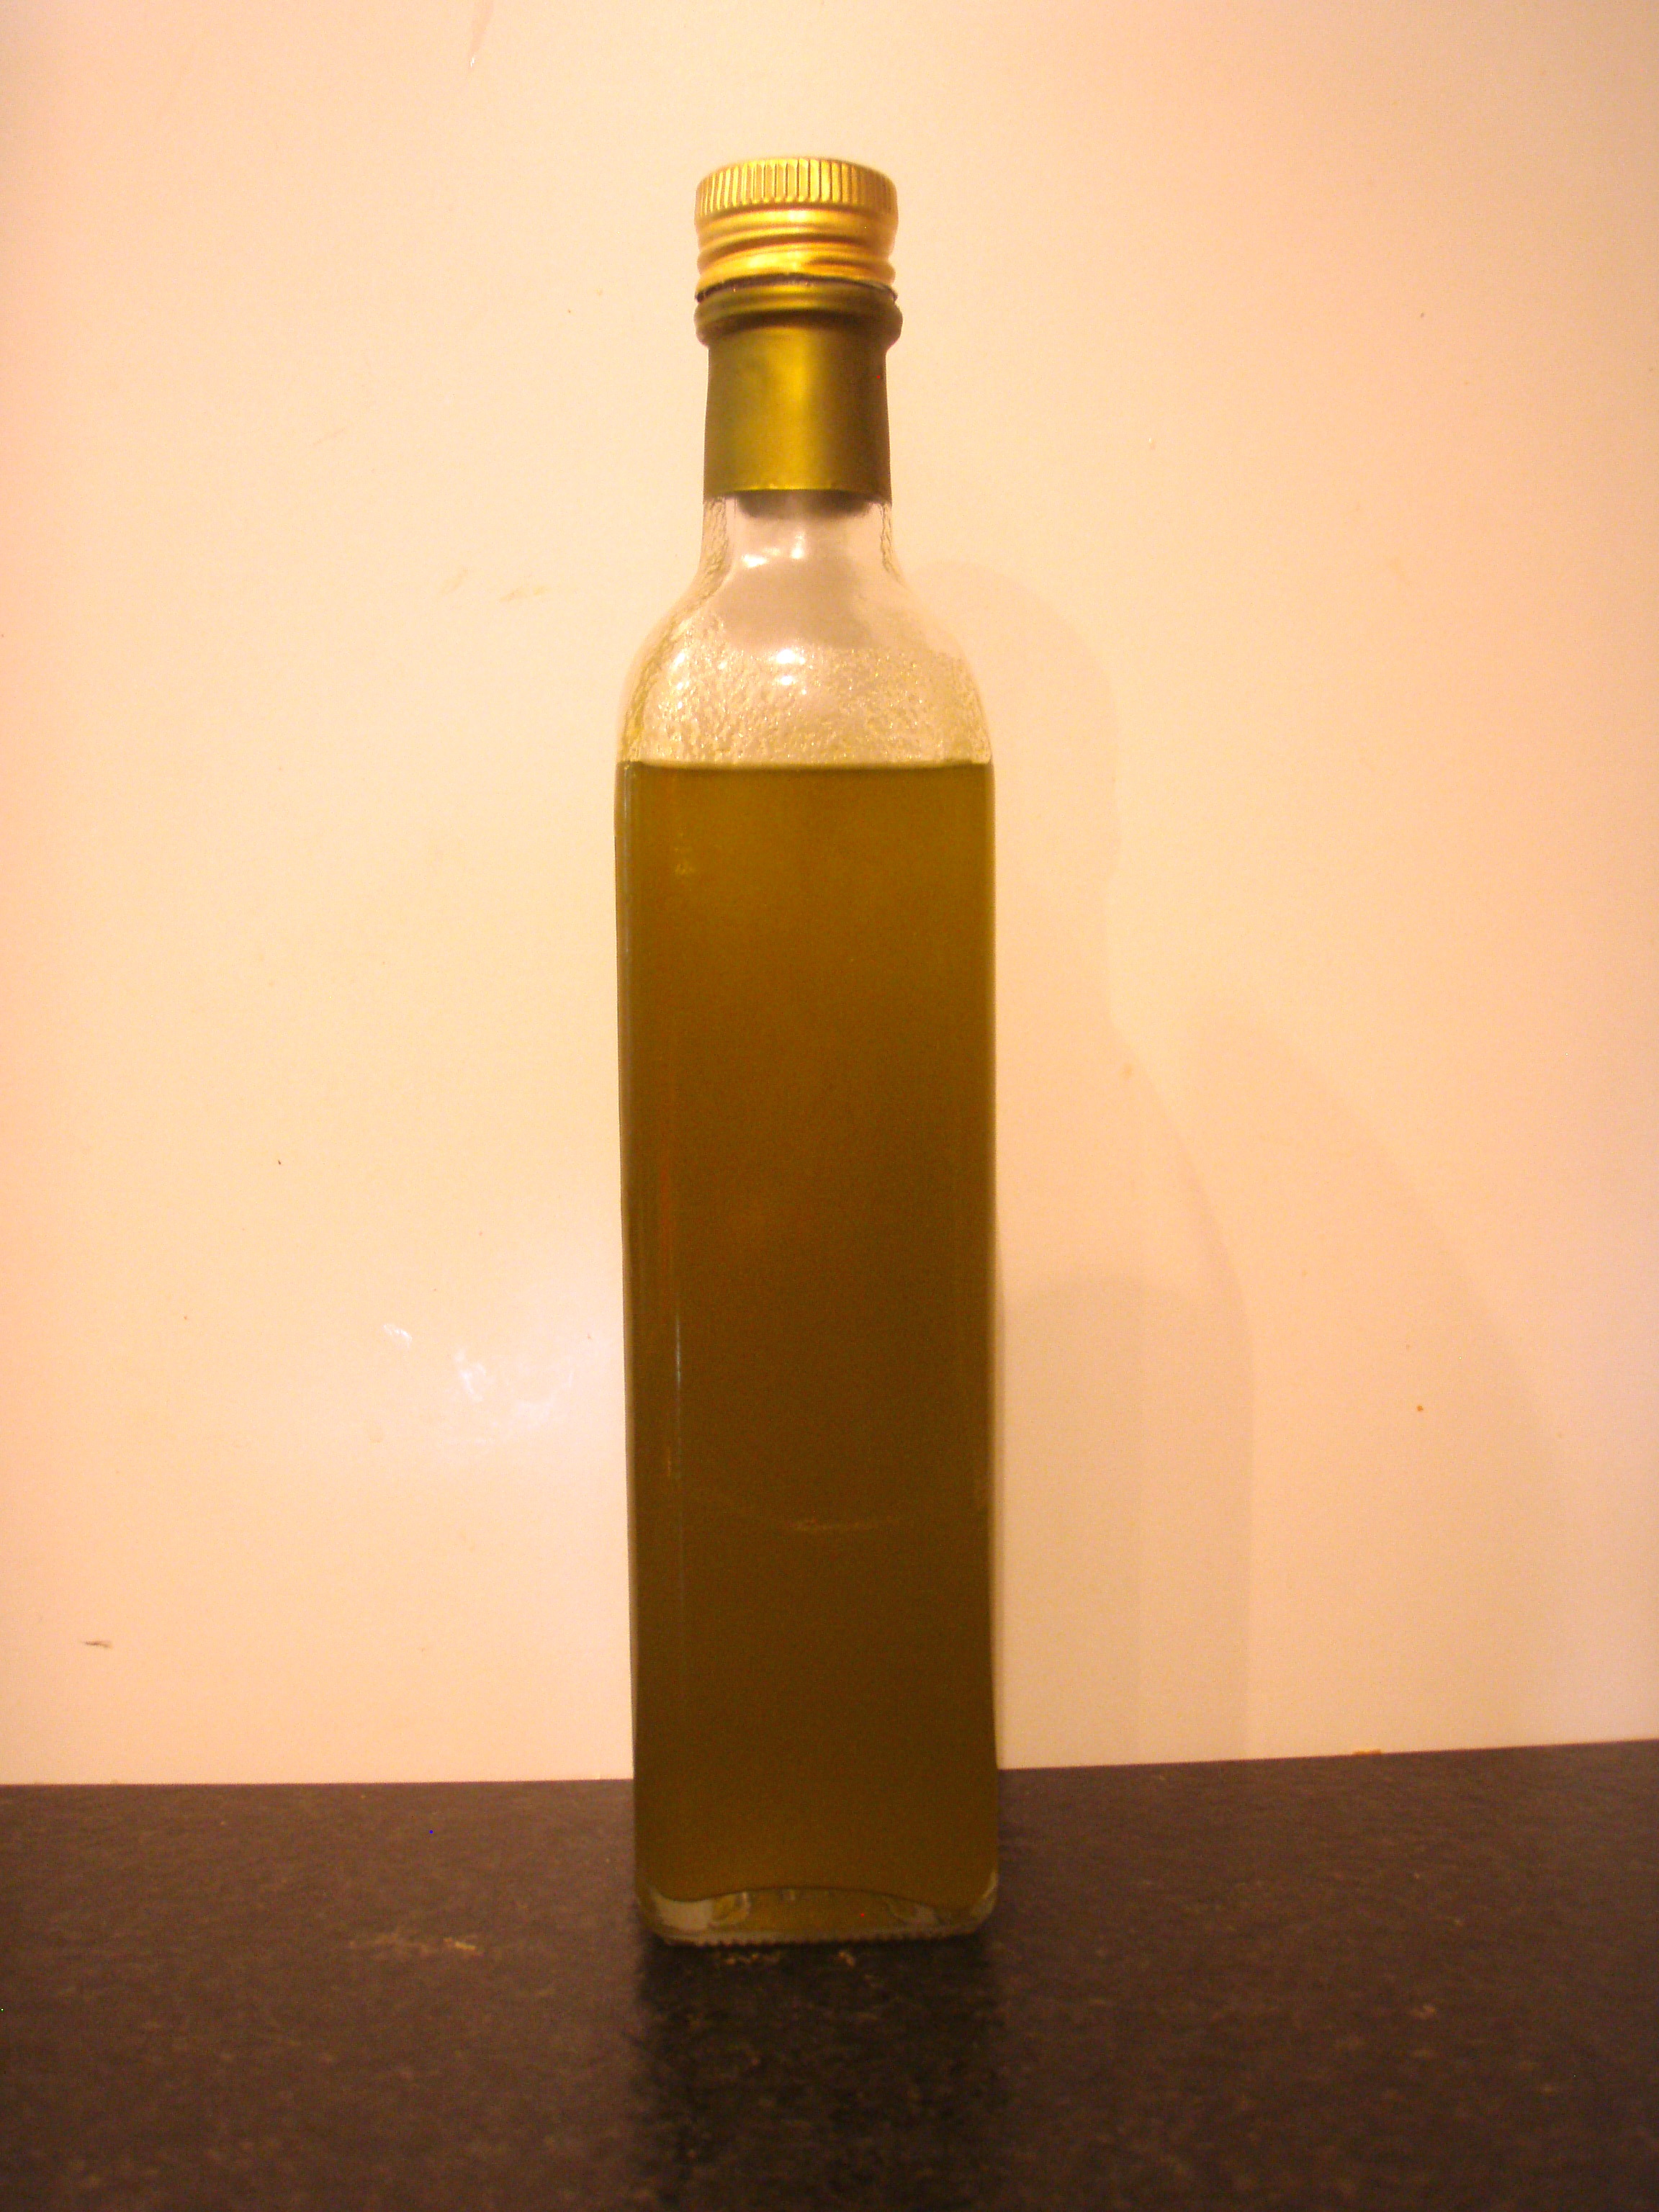 Enligt en lista från EU-parlamentet är olivolja den populäraste varan att fuska med.